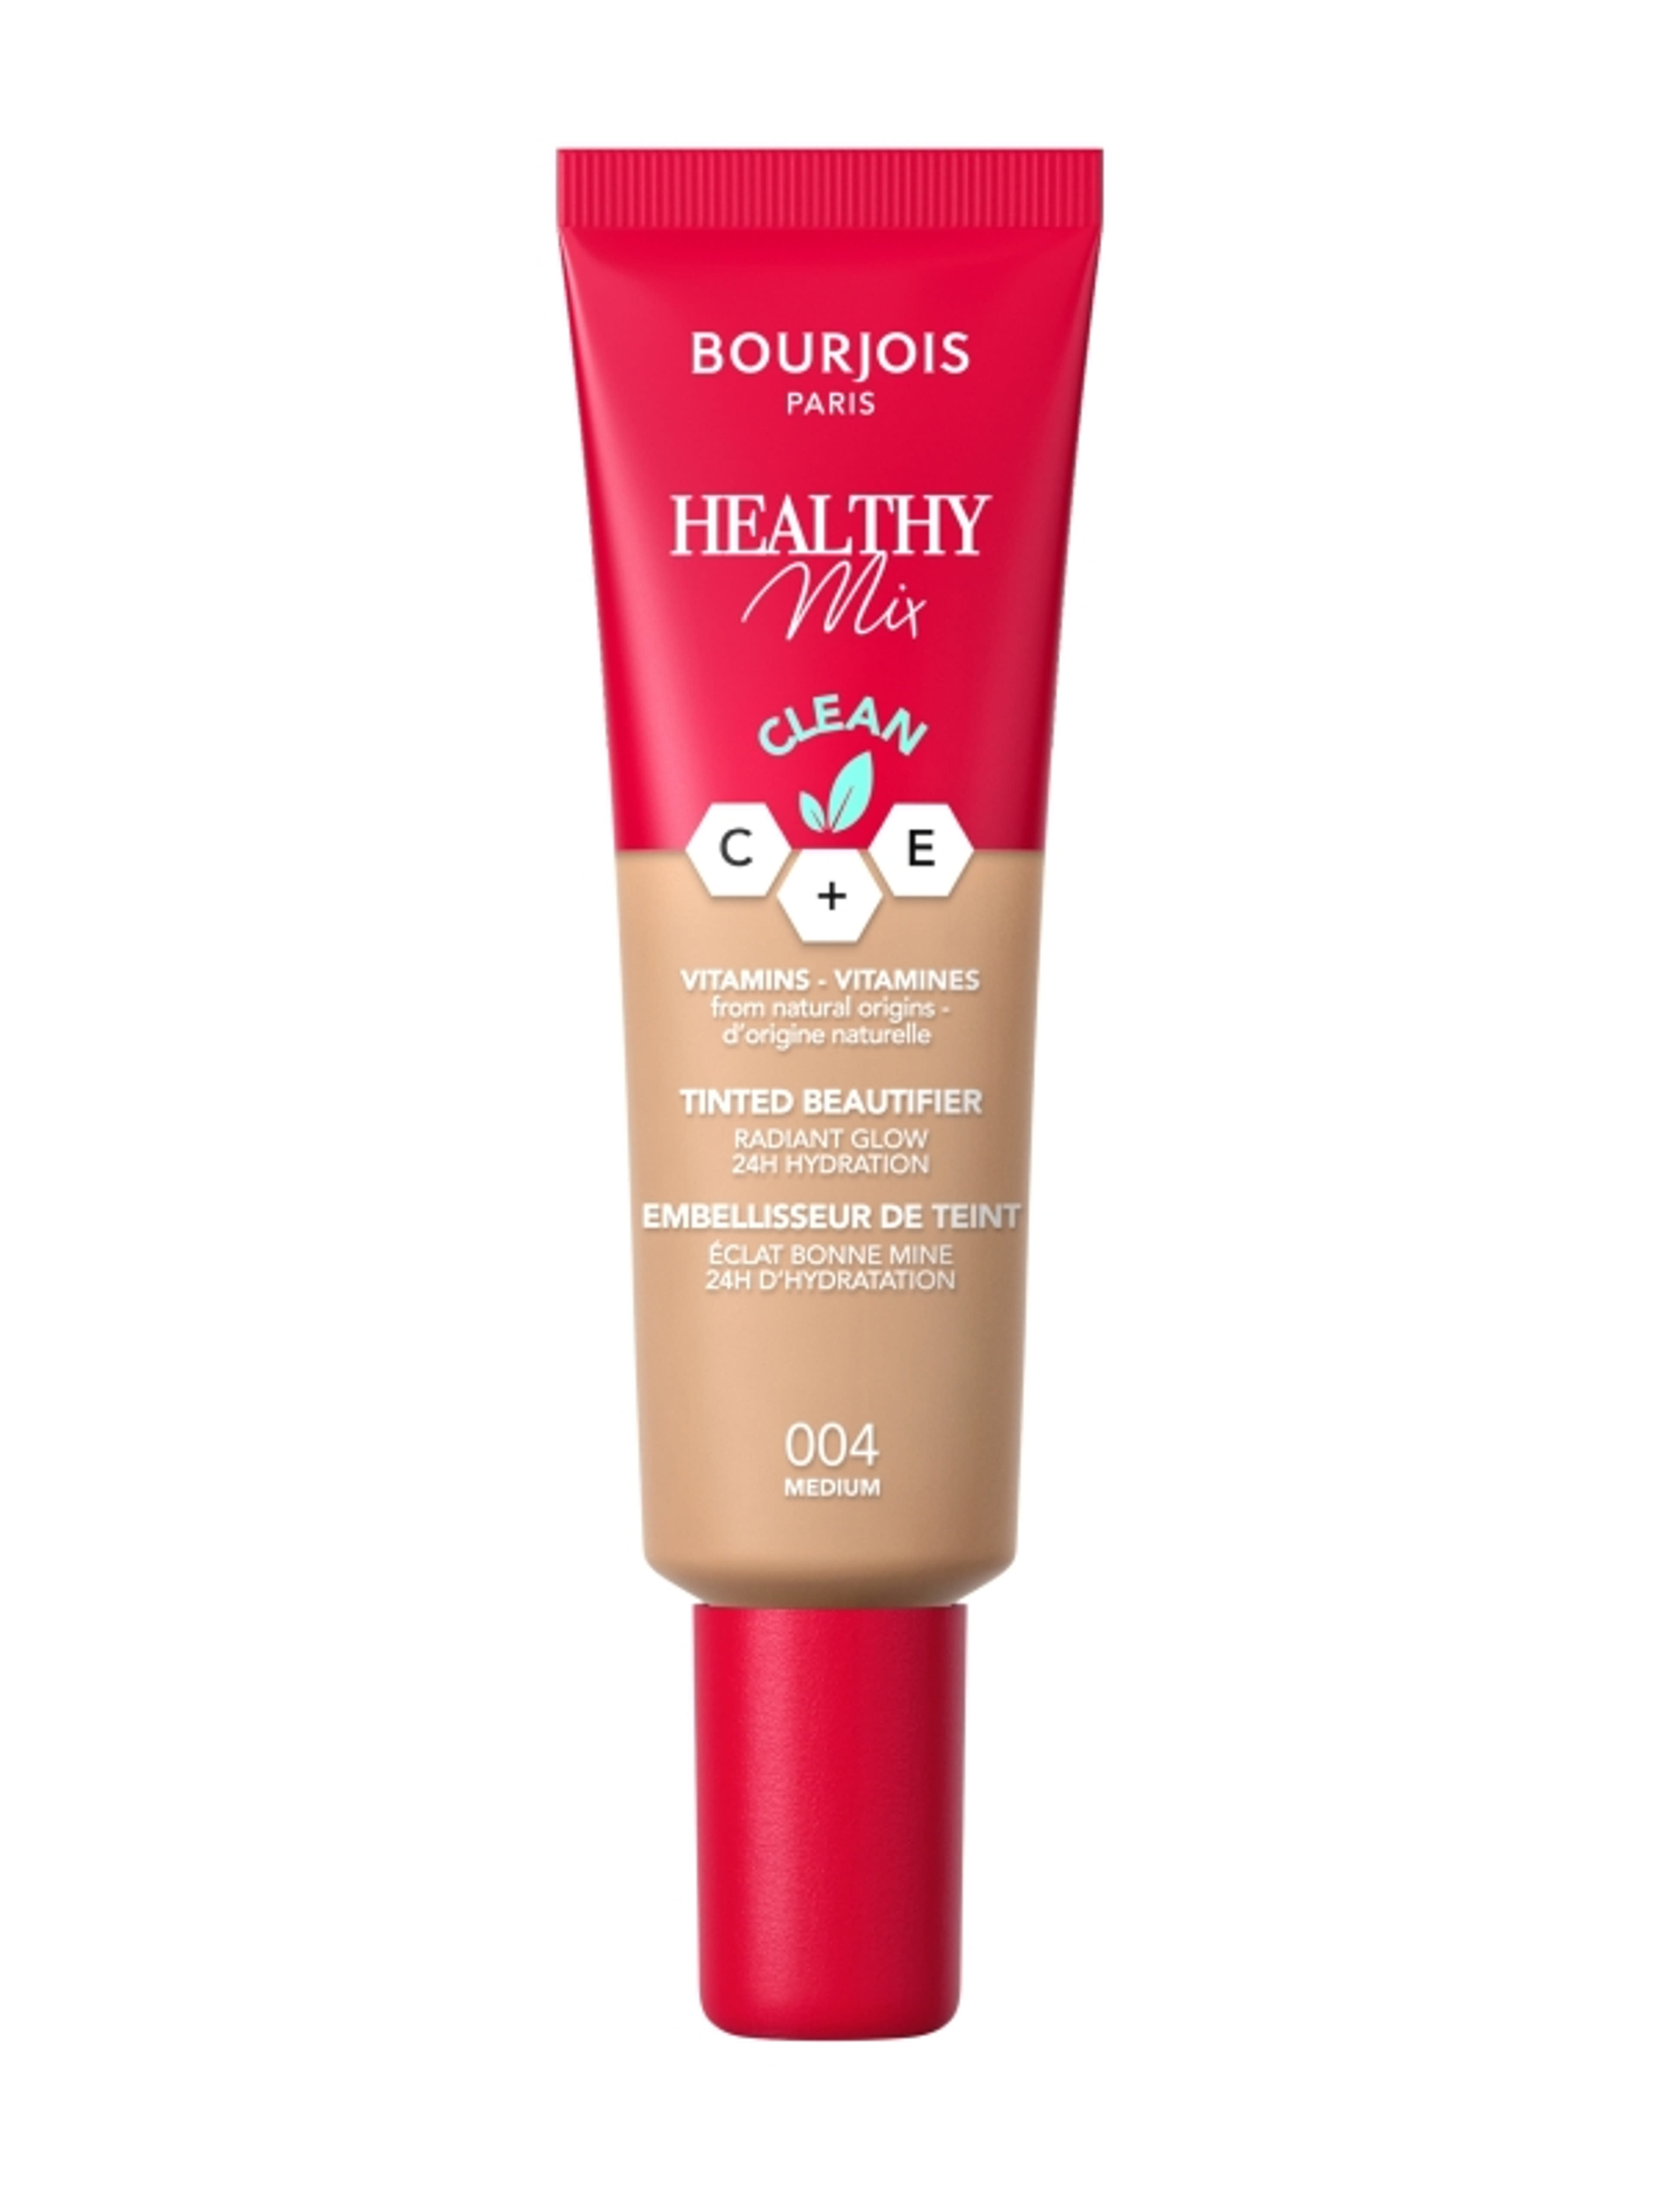 Bourjois Healthy Mix színezett arckrém /004 - 1 db-1